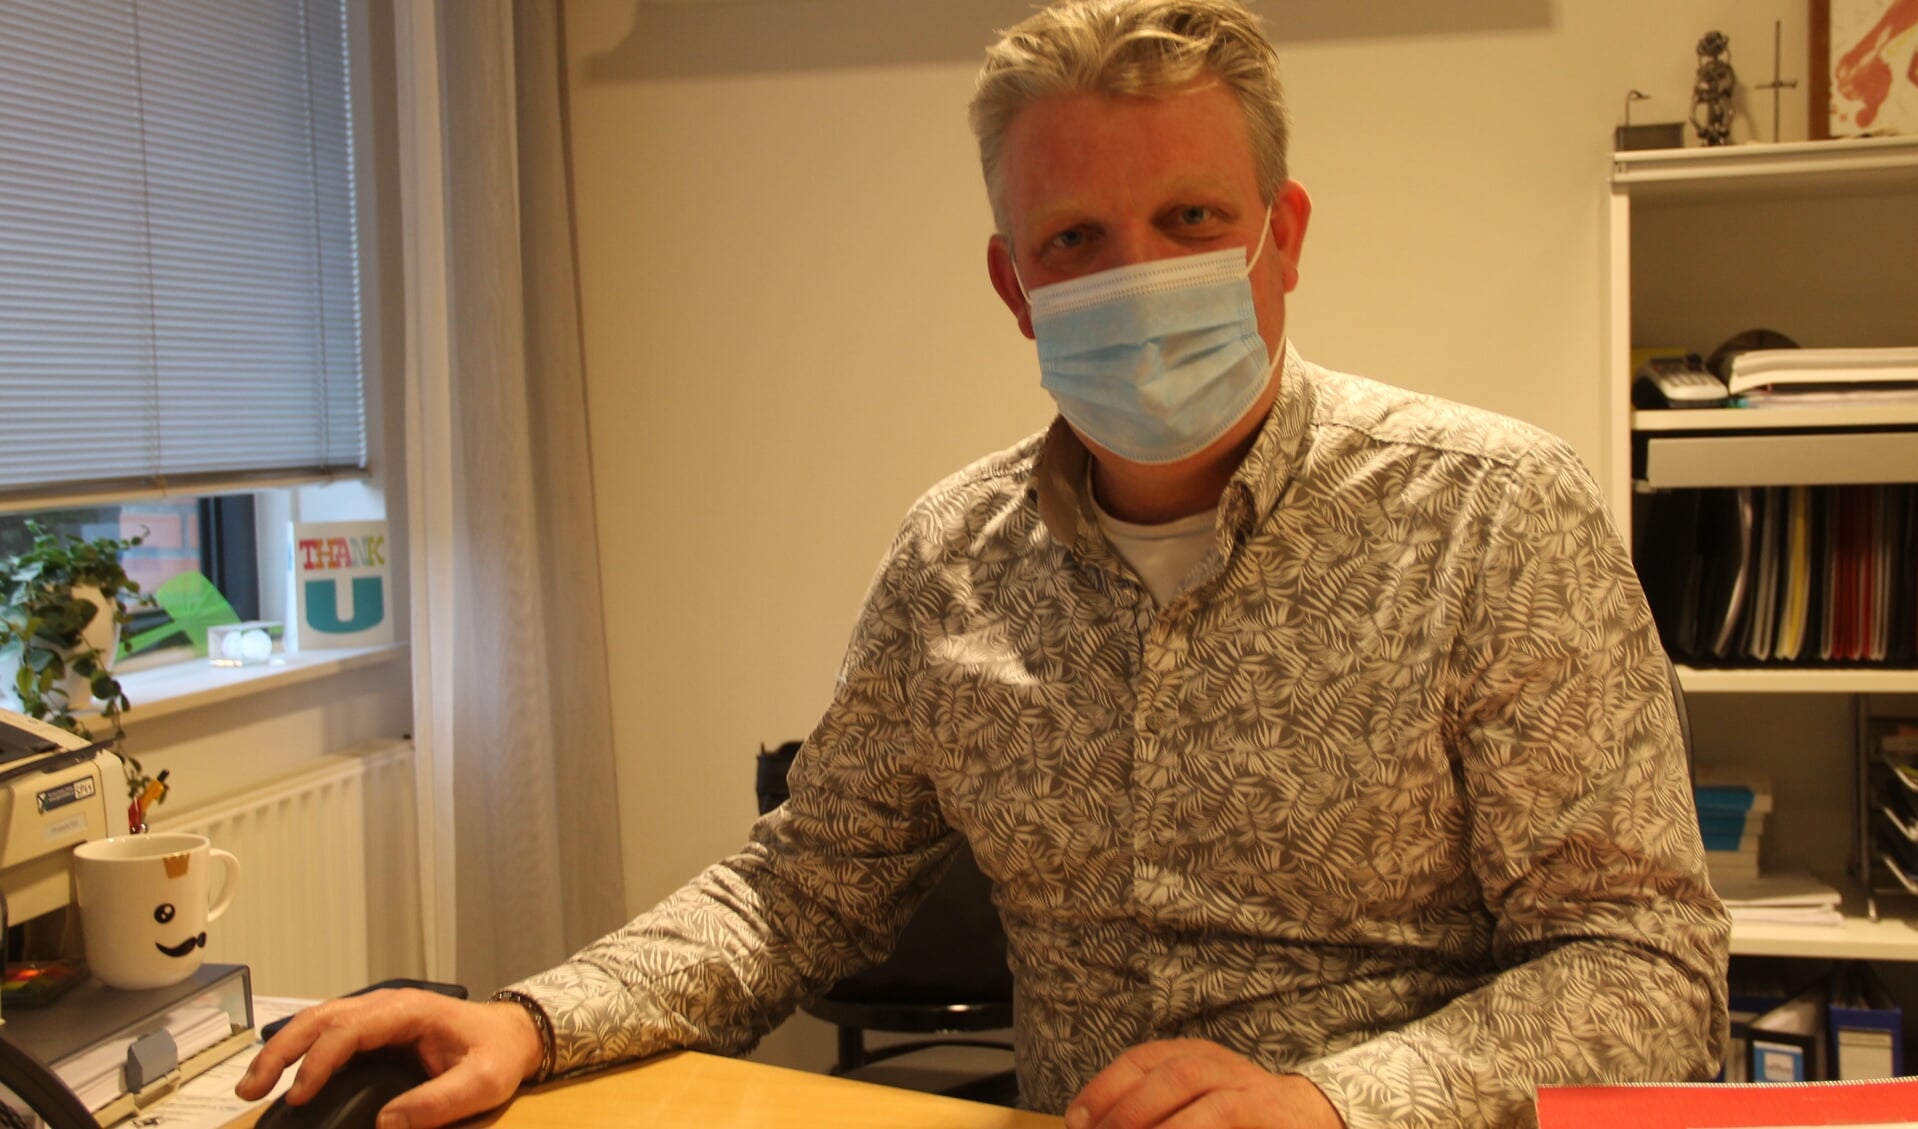 Huisarts Henk Jan Besselink: "Ik heb er alle vertrouwen in dat de vaccinatie tegen Covid-19 goed verloopt". Foto: Lineke Voltman